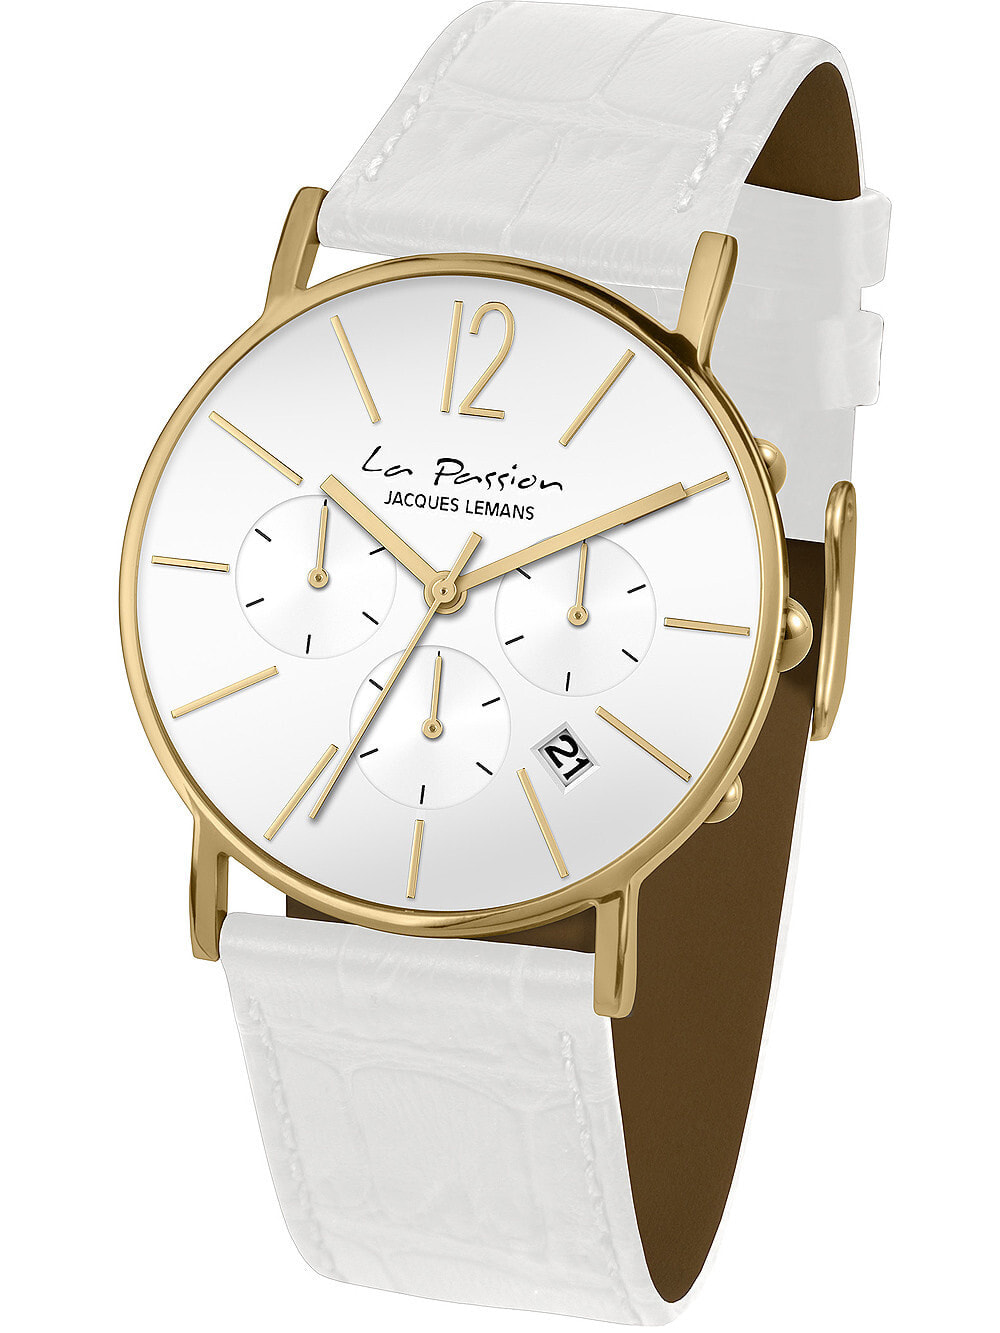 Женские наручные кварцевые часы Jacques Lemans хронограф с секундомером, кожаный ремешок. Водозащита 50WR. Стекло минеральное повышенной прочности.